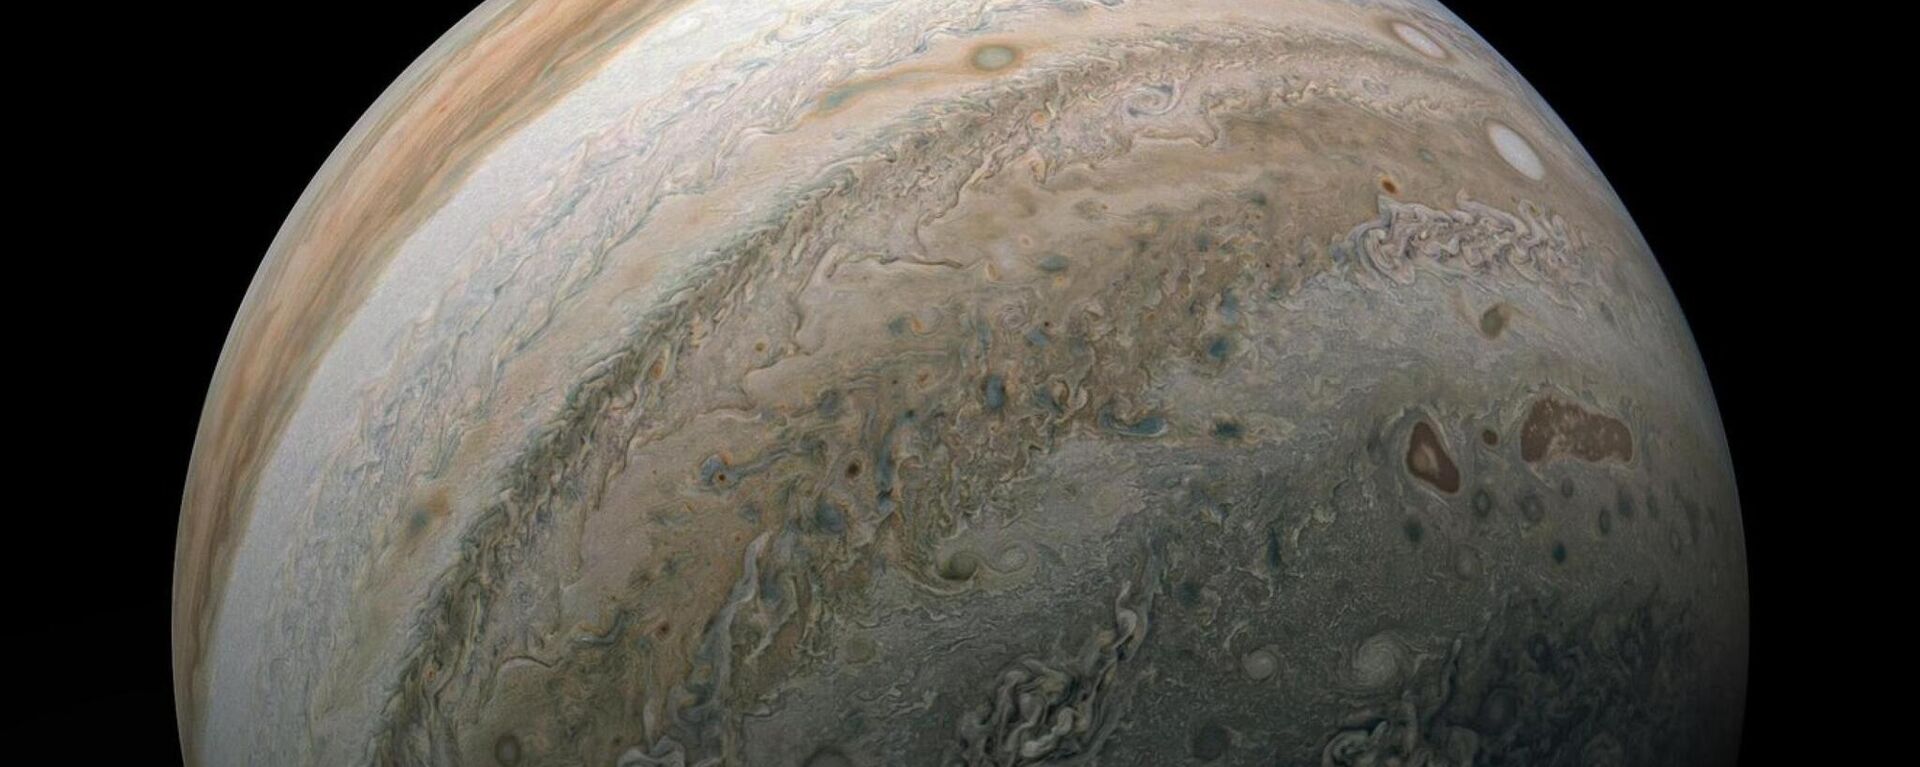 El planeta Júpiter, del Sistema Solar que contiene a la Tierra. - Sputnik Mundo, 1920, 24.09.2022